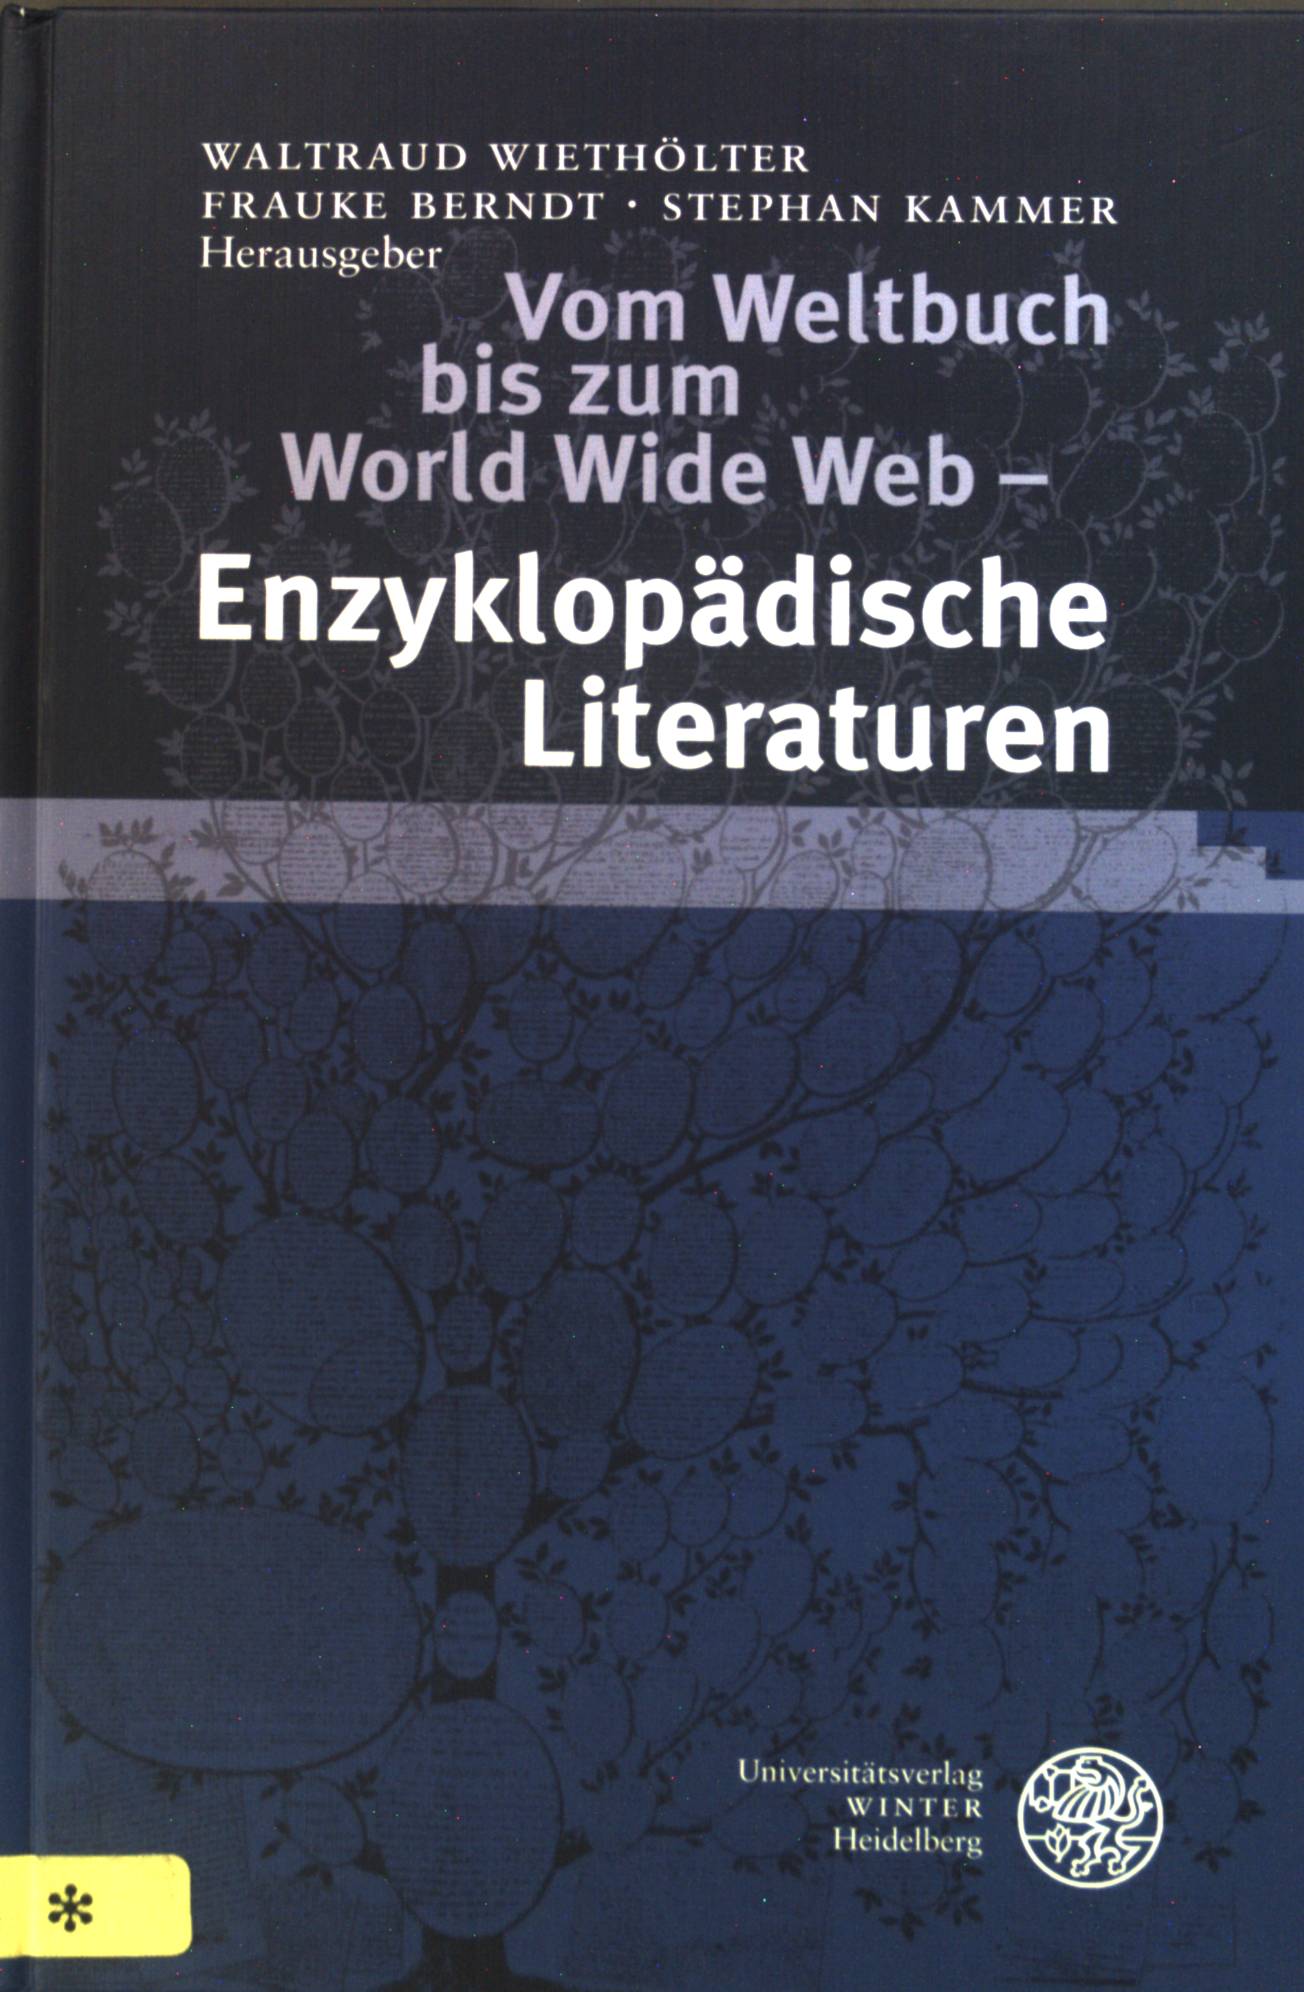 Vom Weltbuch bis zum World Wide Web : enzyklopädische Literaturen. Literaturwissenschaft. Bd. 21. - Wiethölter, Waltraud, Frauke Berndt Stephan Kammer u. a.